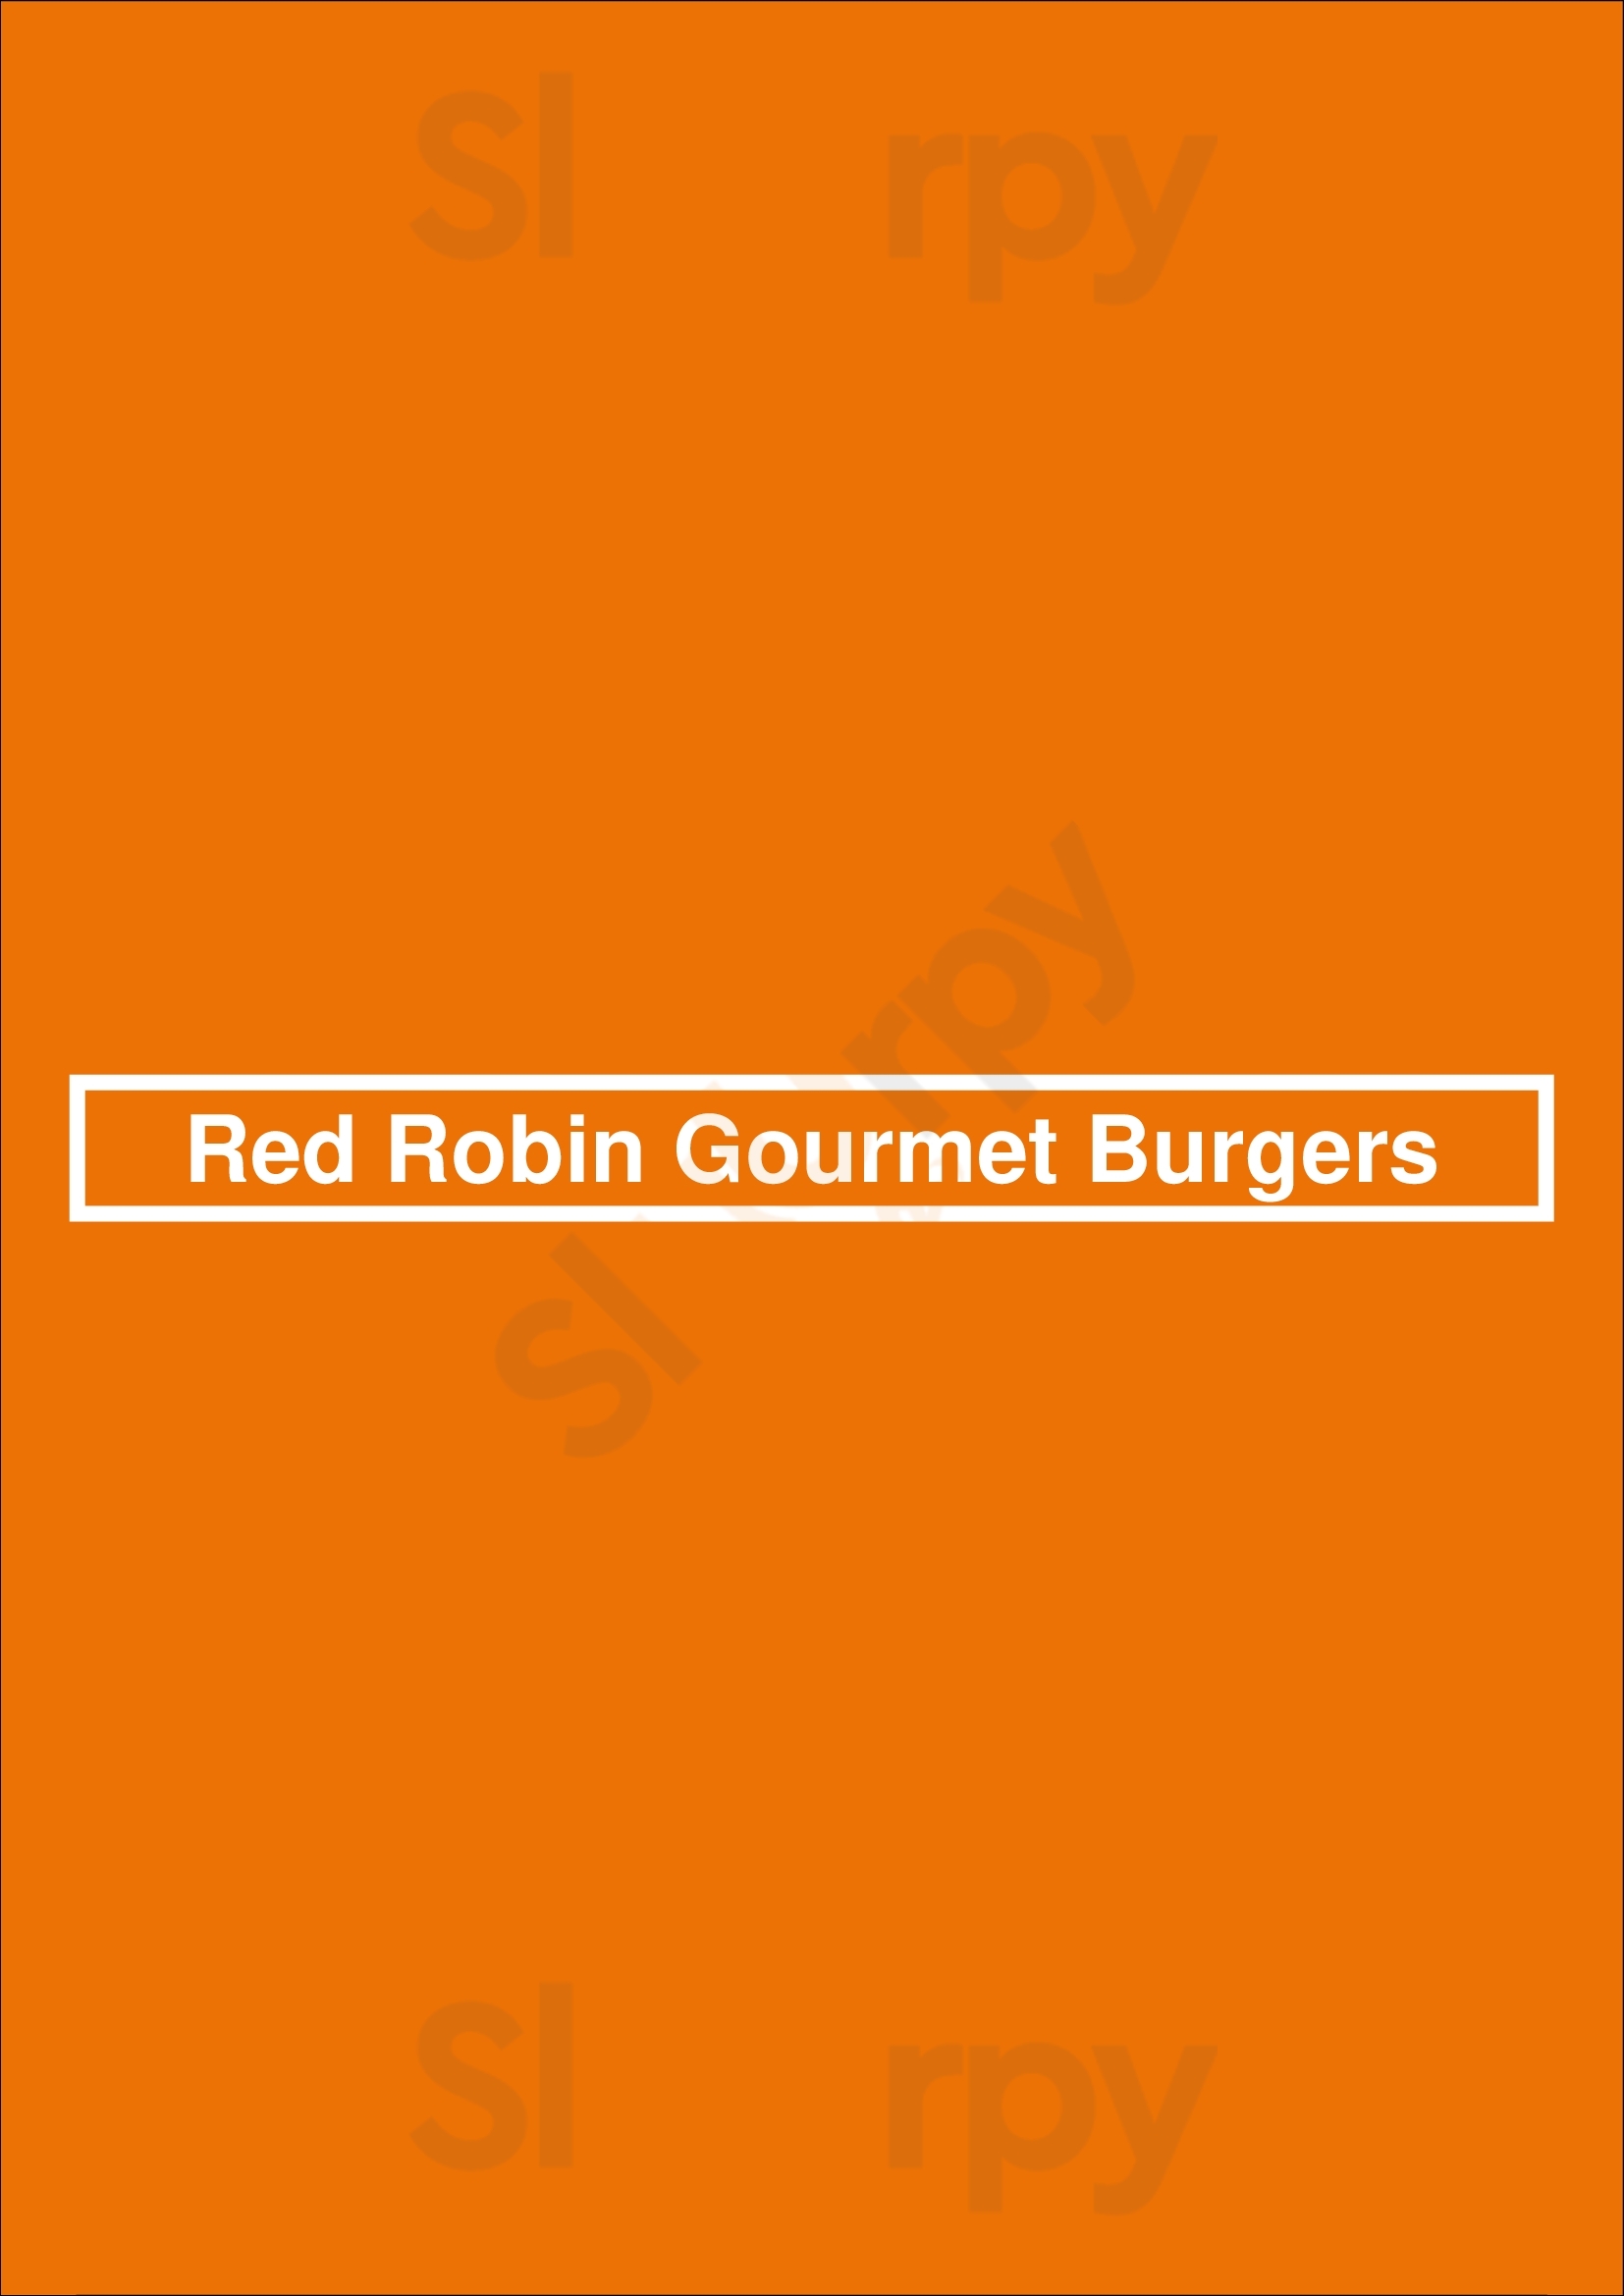 Red Robin Gourmet Burgers Los Angeles Menu - 1